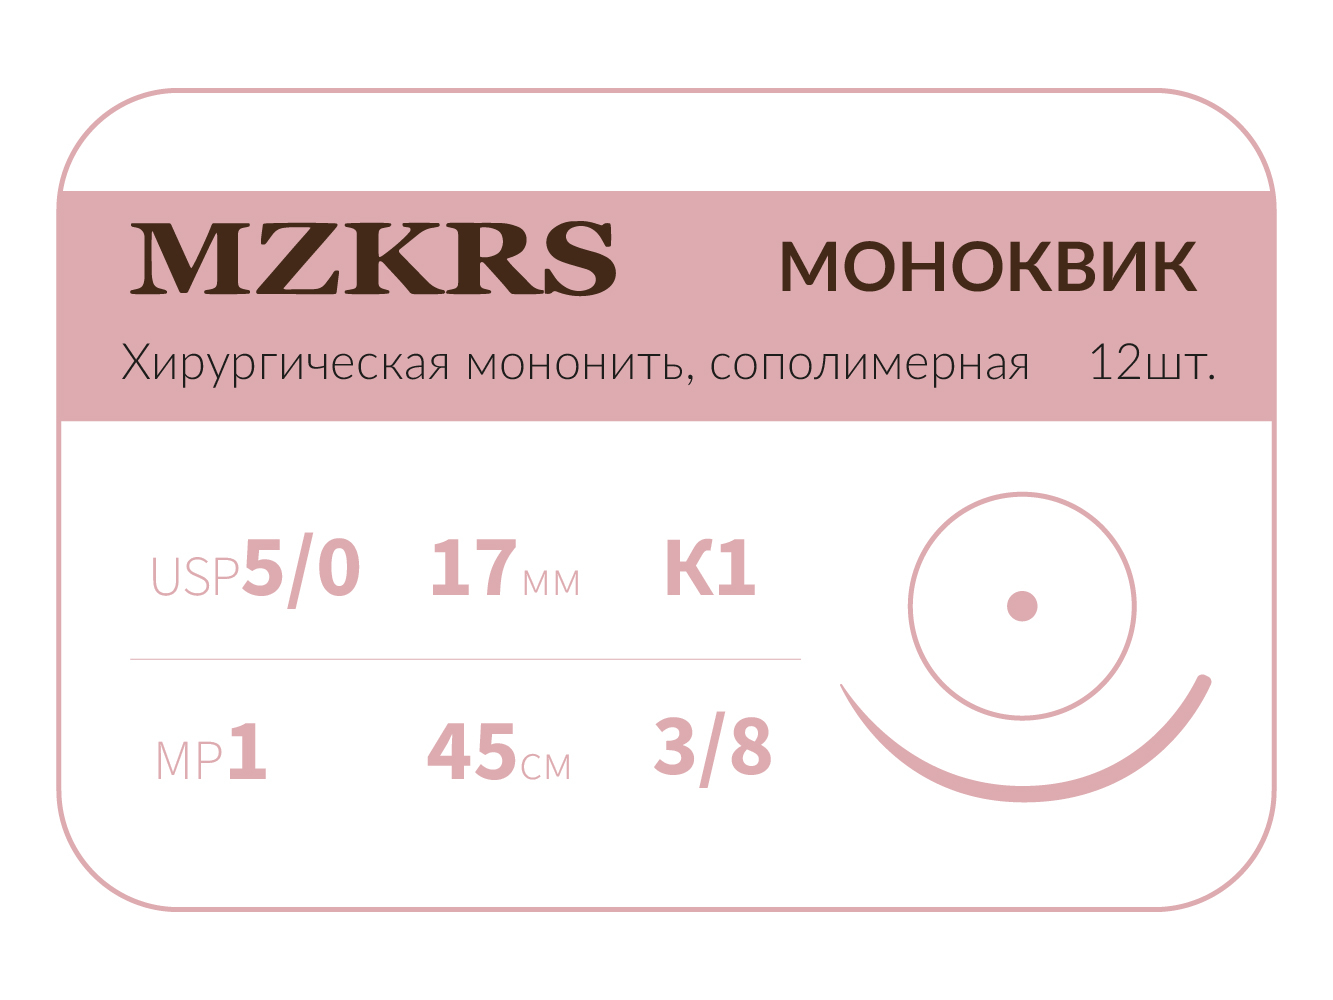 1738К1 Premium-5/0 (1)45 МОНК МОНОКВИК хирургическая мононить, сополимерная, MZKRS (Россия)